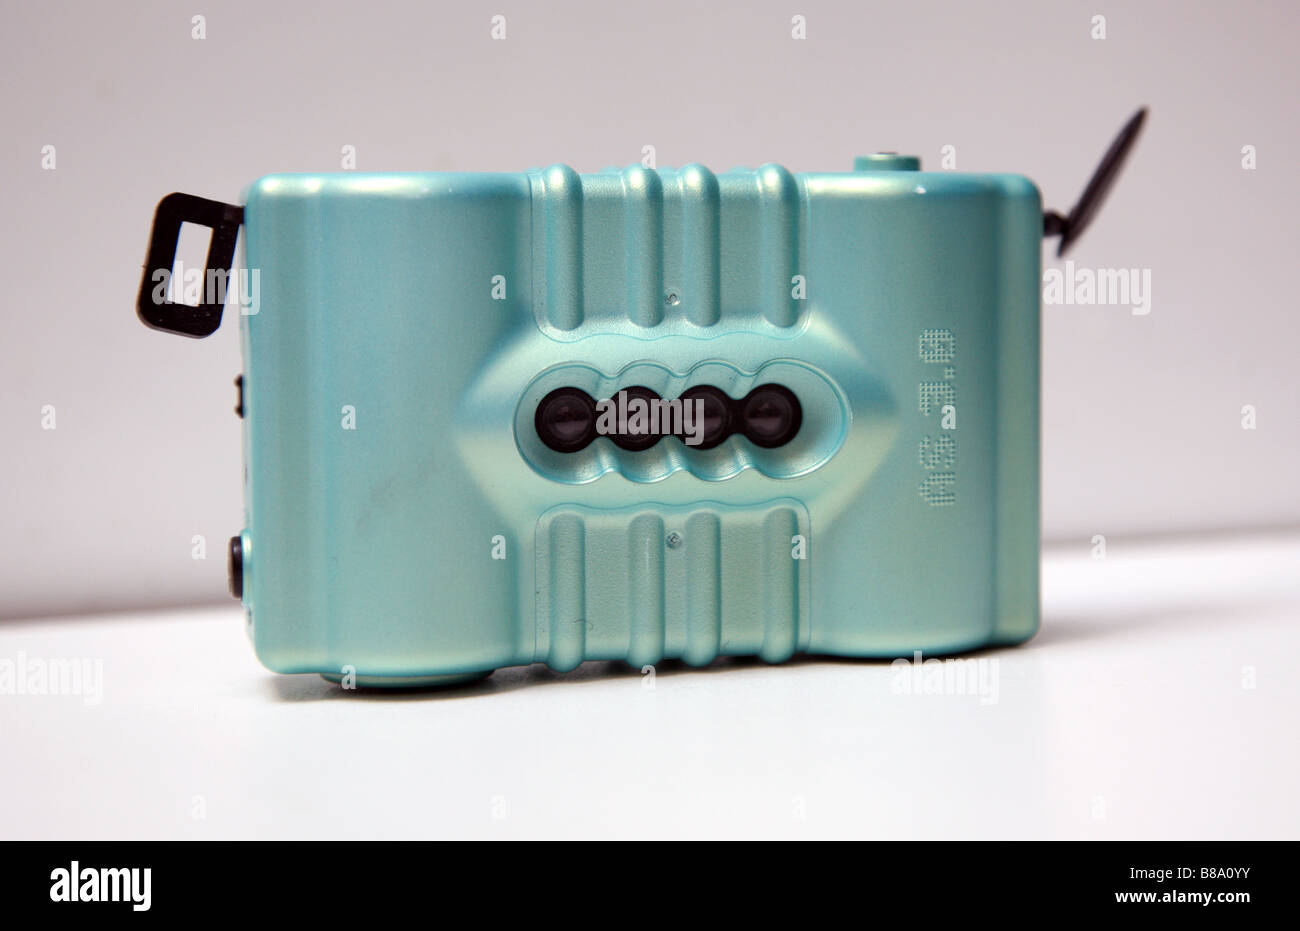 Lomo-Kamera mit 4 Linsen, die Sequenz von 4 Bildern dauert Stockfotografie  - Alamy